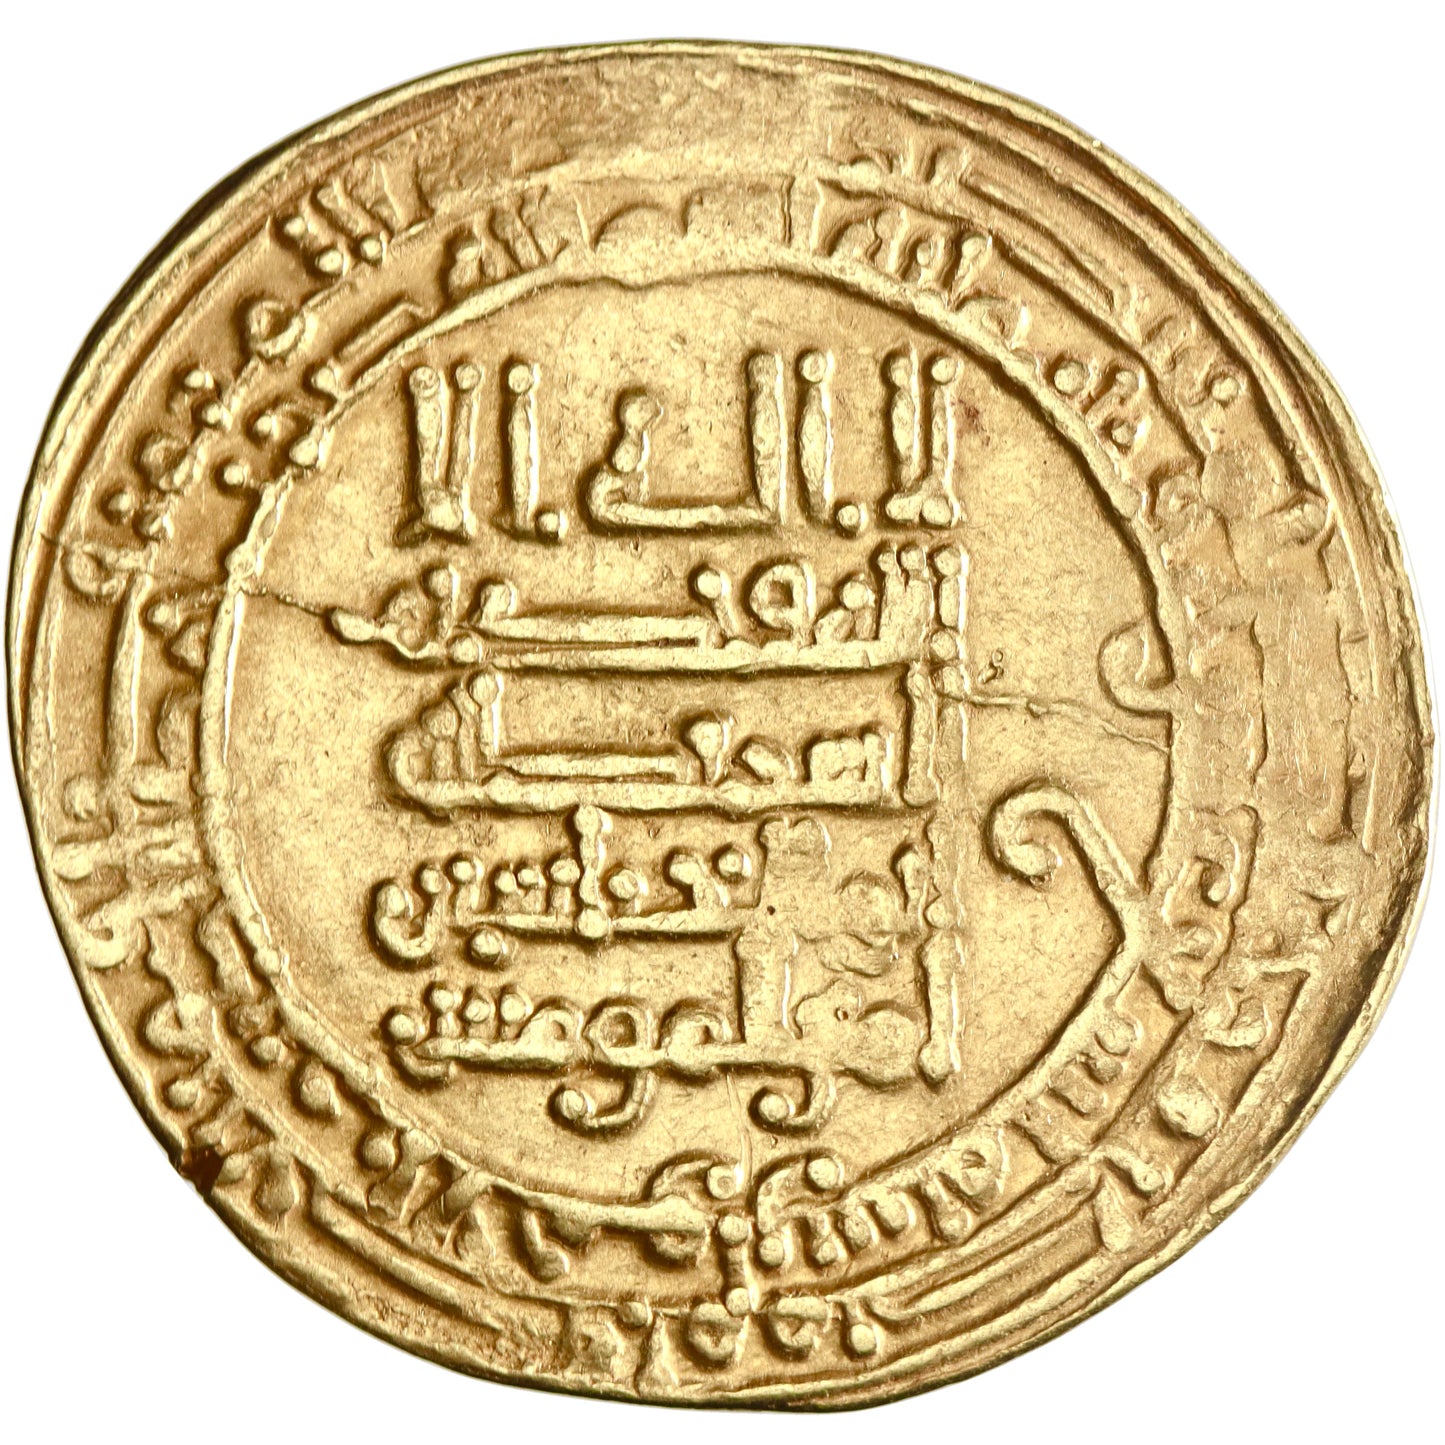 Abbasid, al-Muqtadir, gold dinar, al-Ahwaz mint, AH 319, citing Abu al-'Abbas